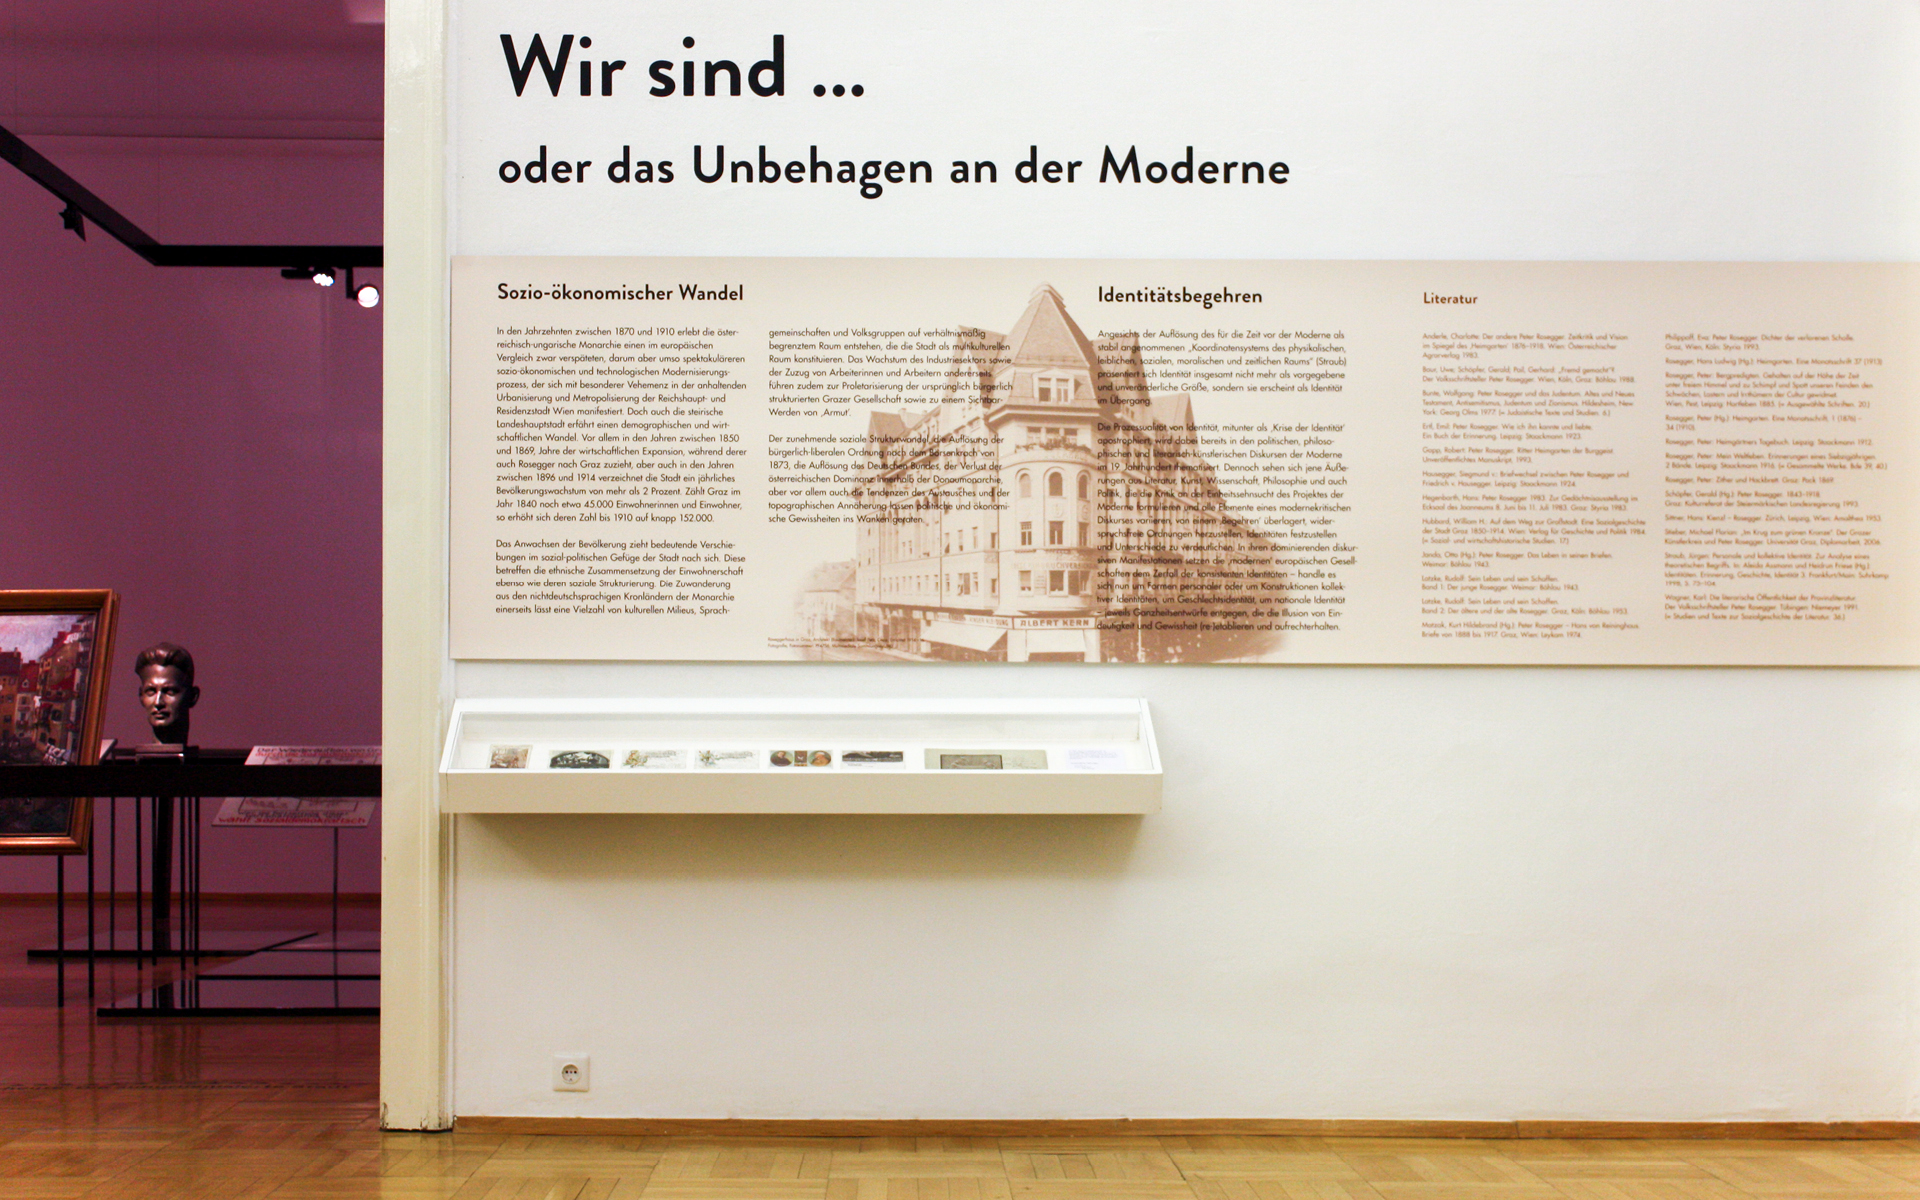 Ausstellungsgrafik für die Peter Rossegger Ausstellung "Im Krug zum grünen Kranze" im GrazMuseum von der Werbeagentur look! design